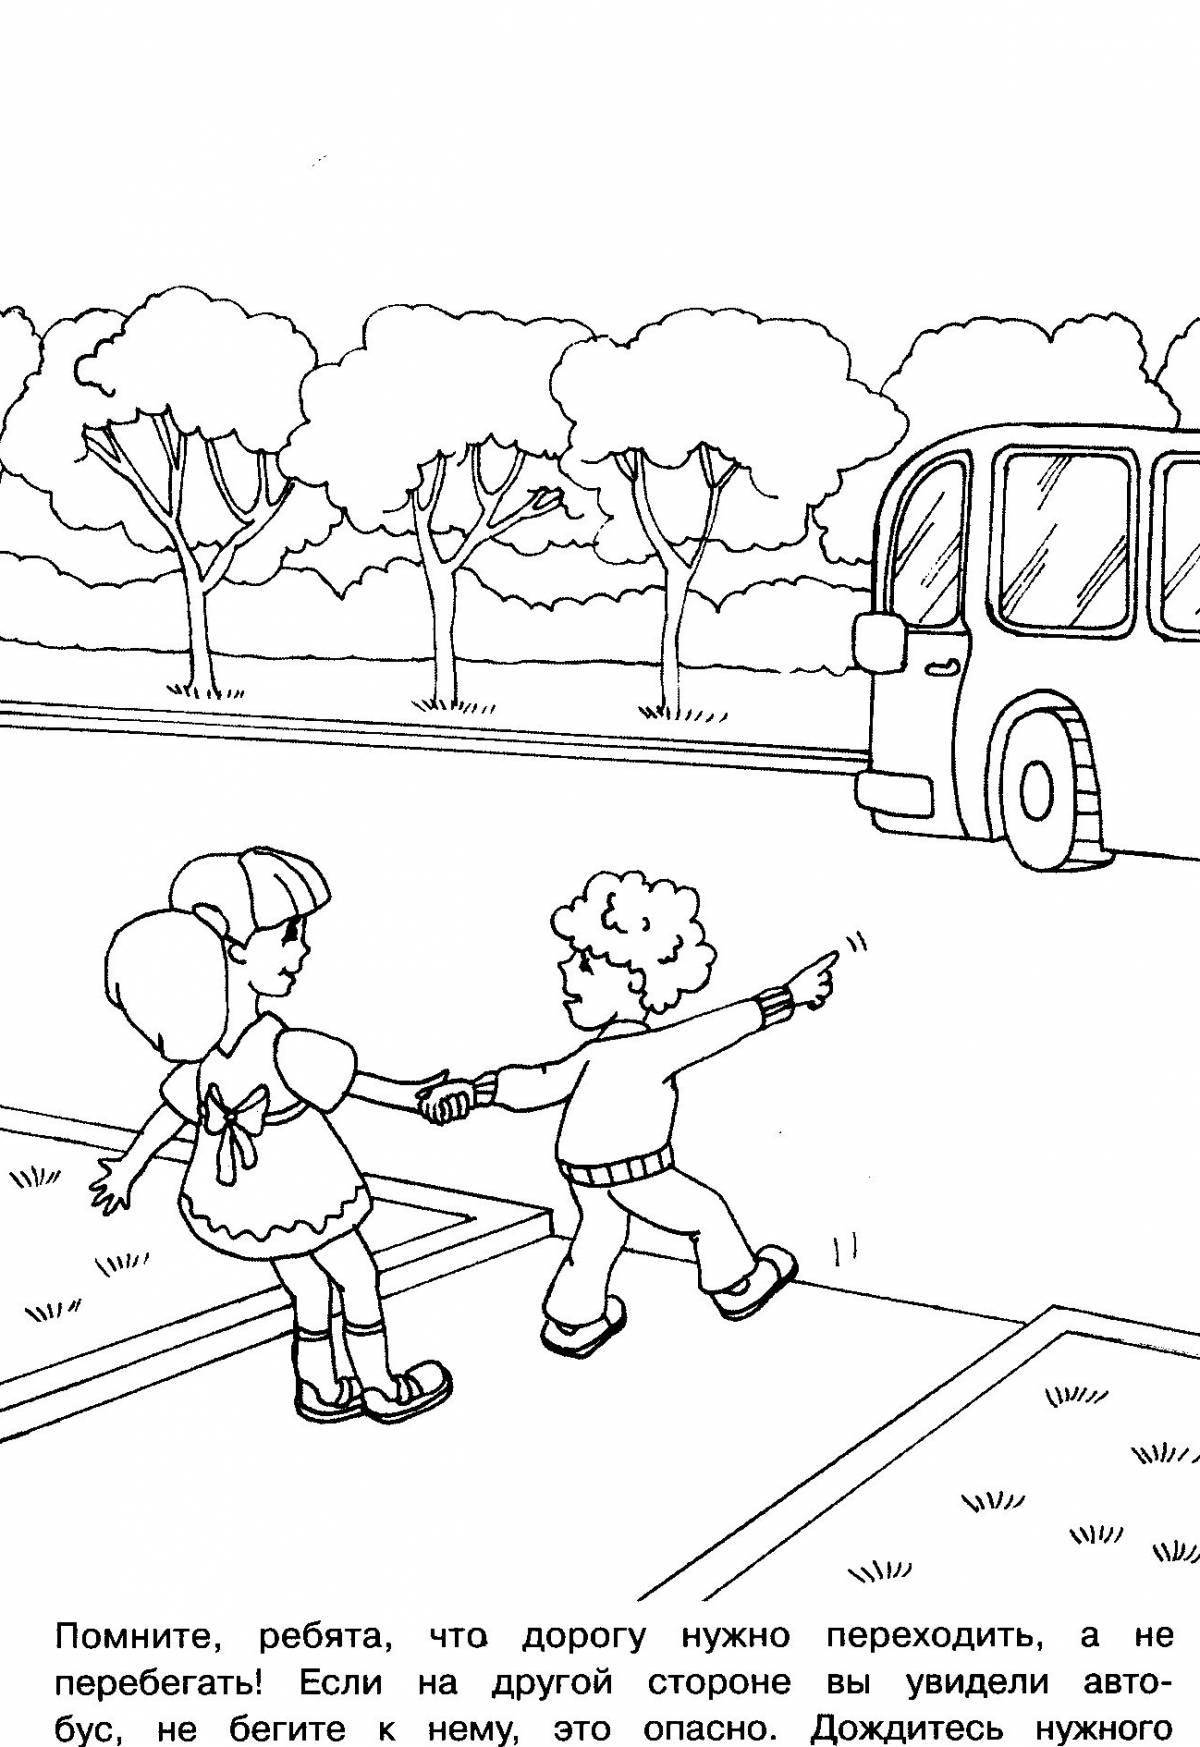 Правила дорожного движения для школьников #1